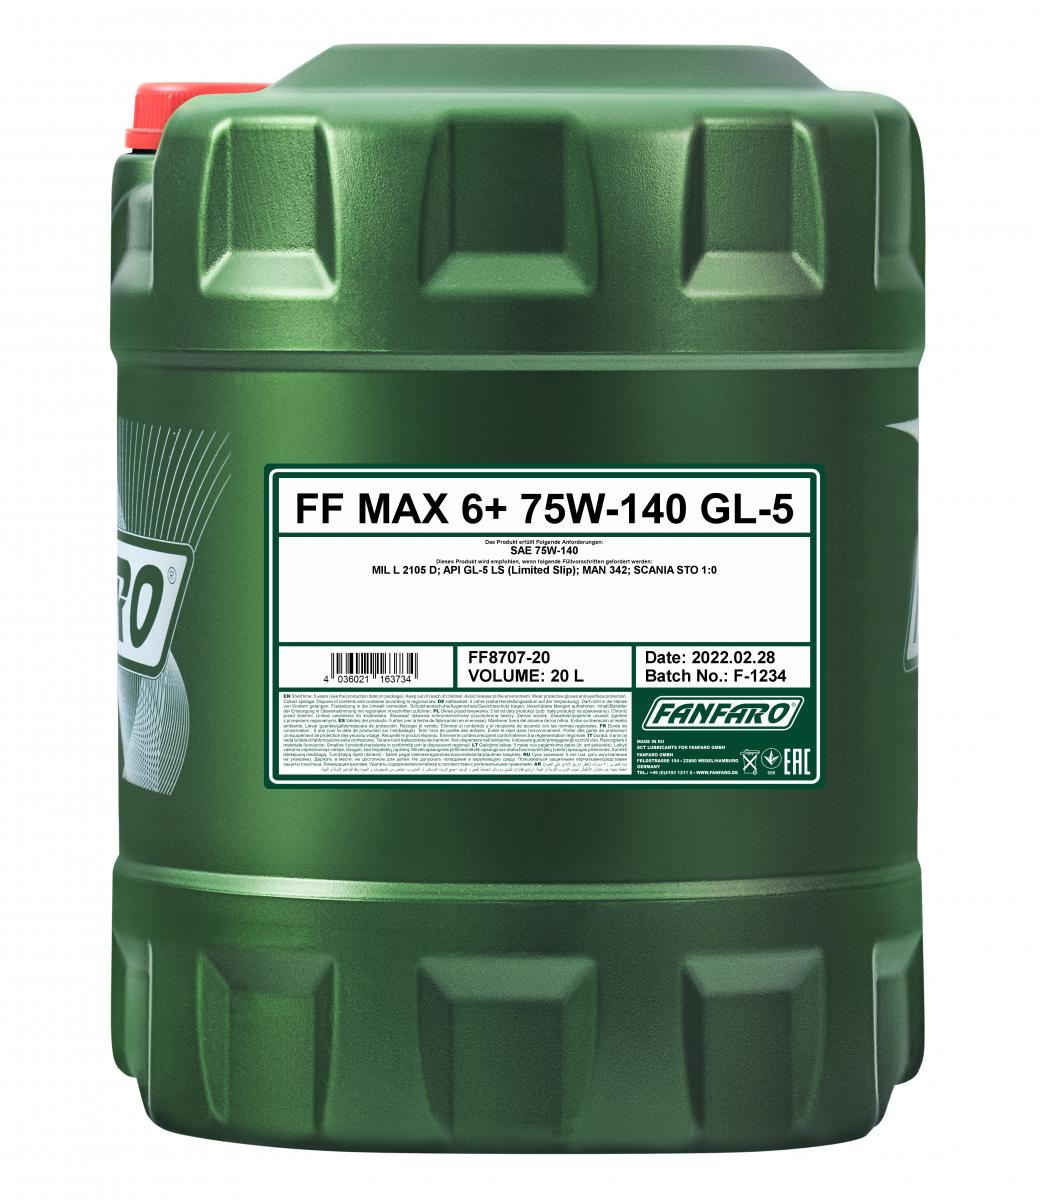 40 Liter (2x20) FANFARO MAX 6+ 75W-140 GL-5 API GL5 LS Getriebeöl MIL-L-2105 D